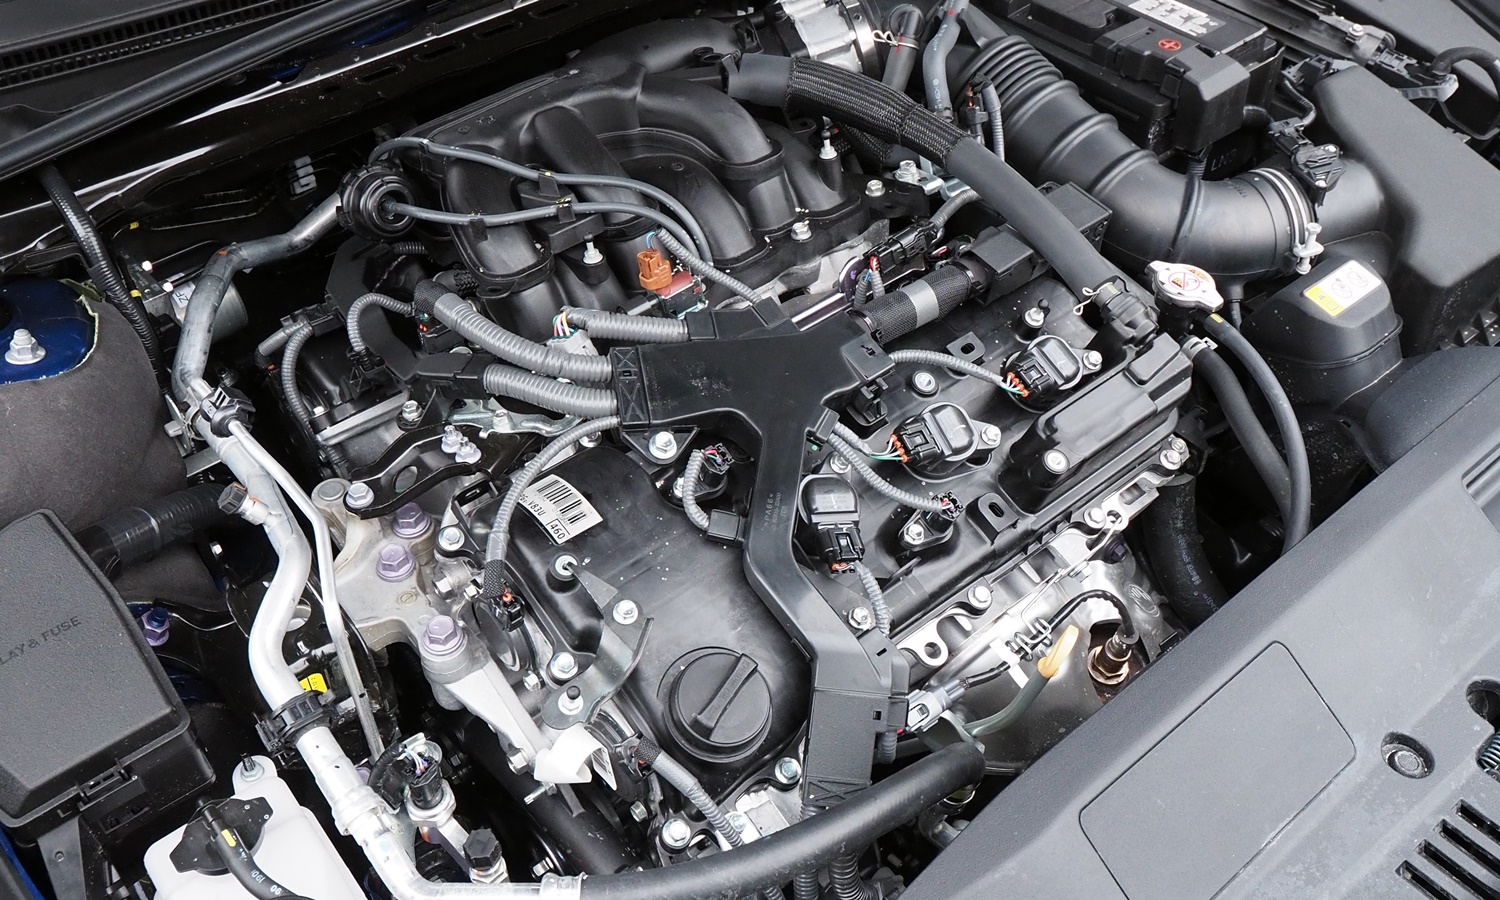 Lexus ES Photos: Lexus ES 350 F Sport engine uncovered